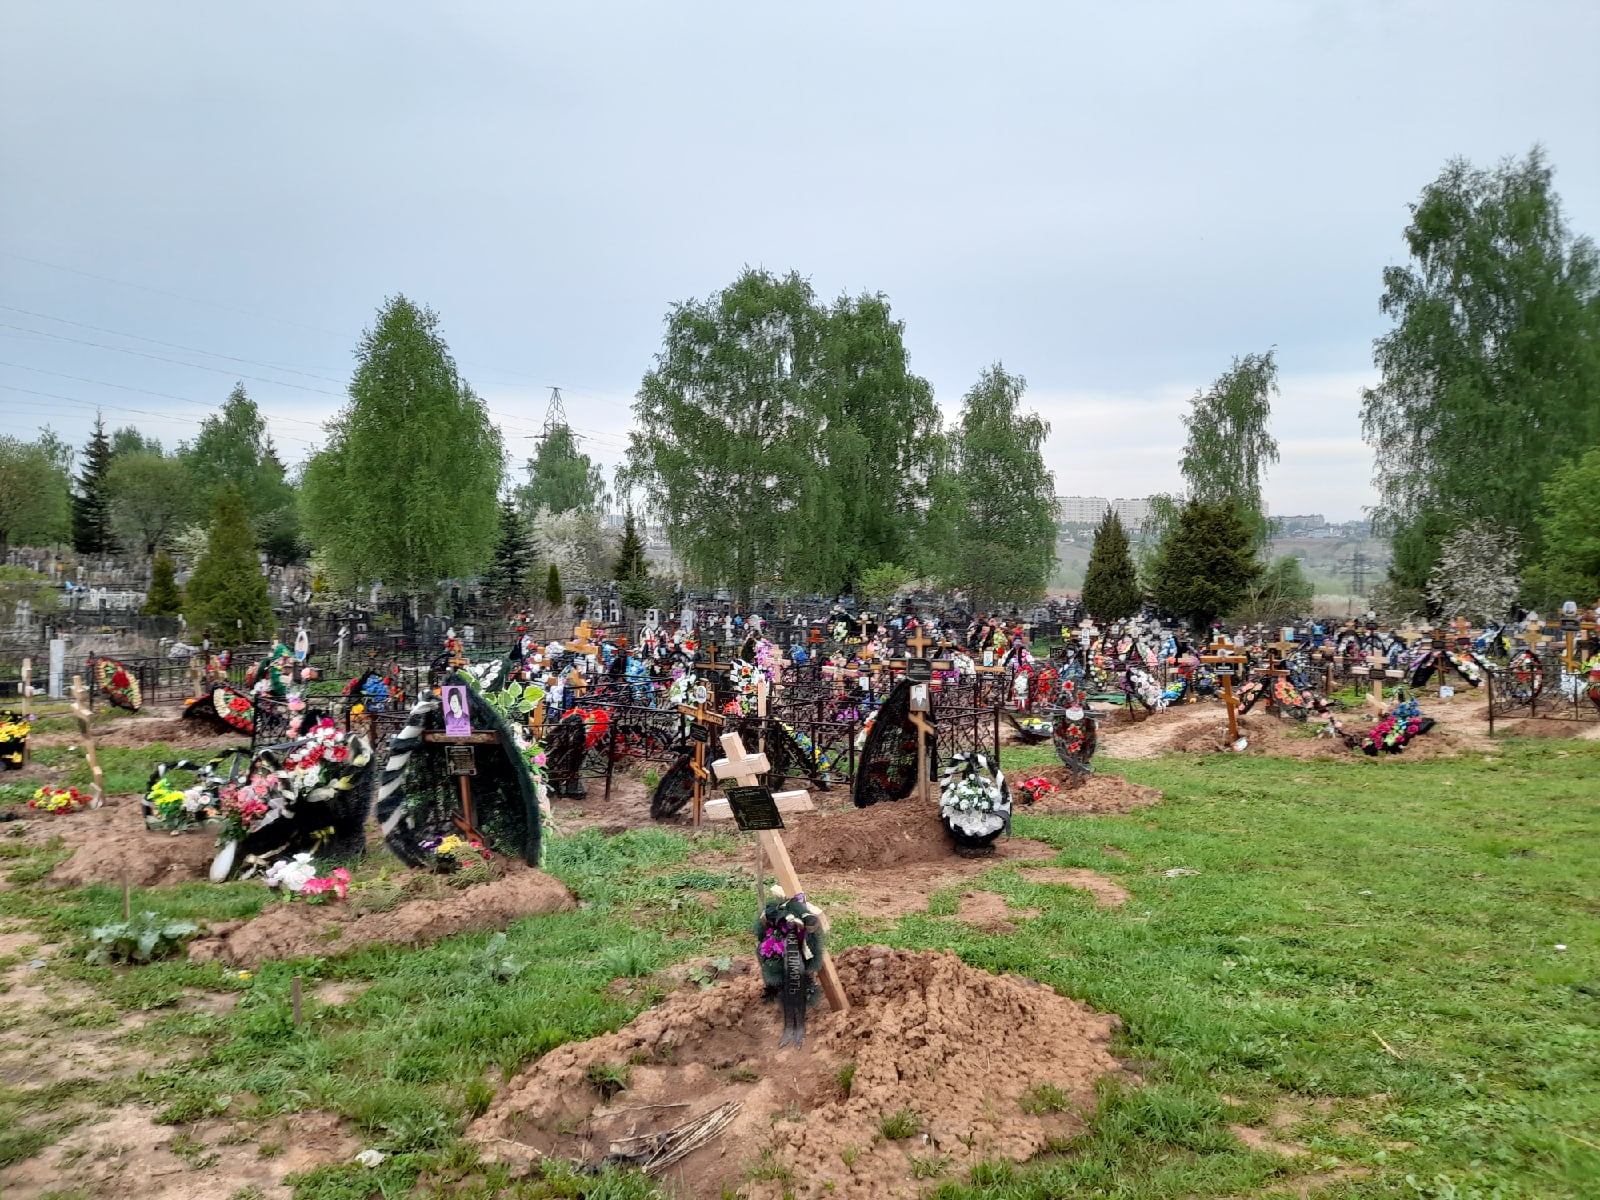 Кладбище Березовая роща Нижний Новгород